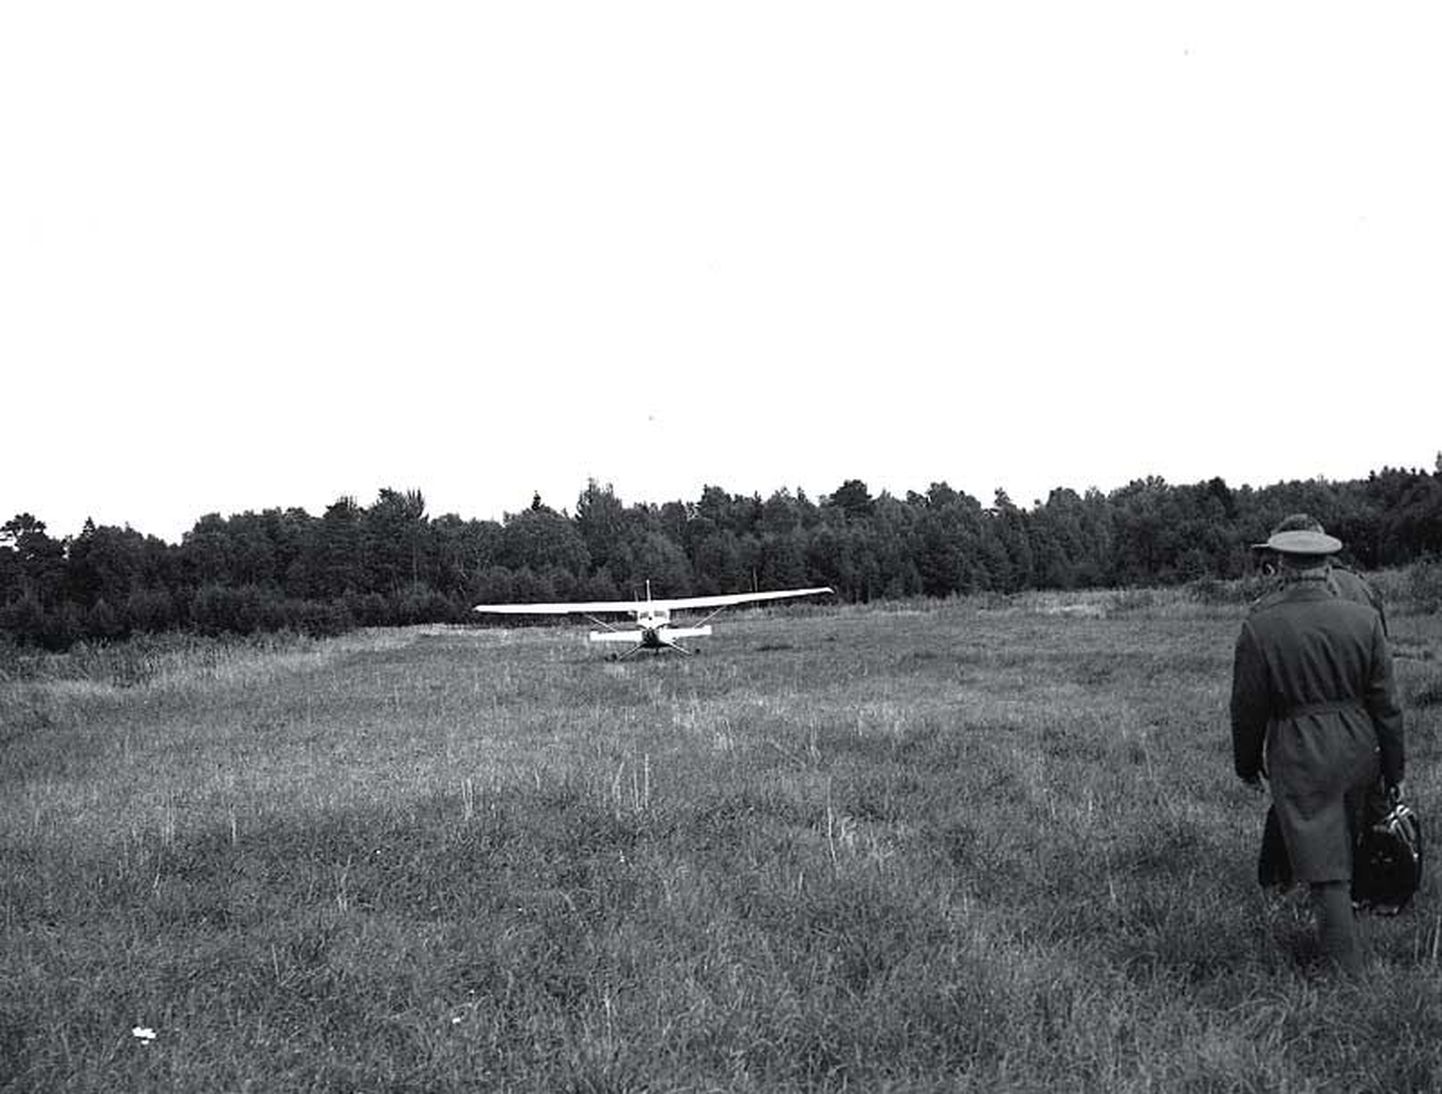 Nõukogude kõrged sõjaväelased siirduvad uurima Kõpu poolsaare uudismaapõllule maandunud Cessna Skyhawki.